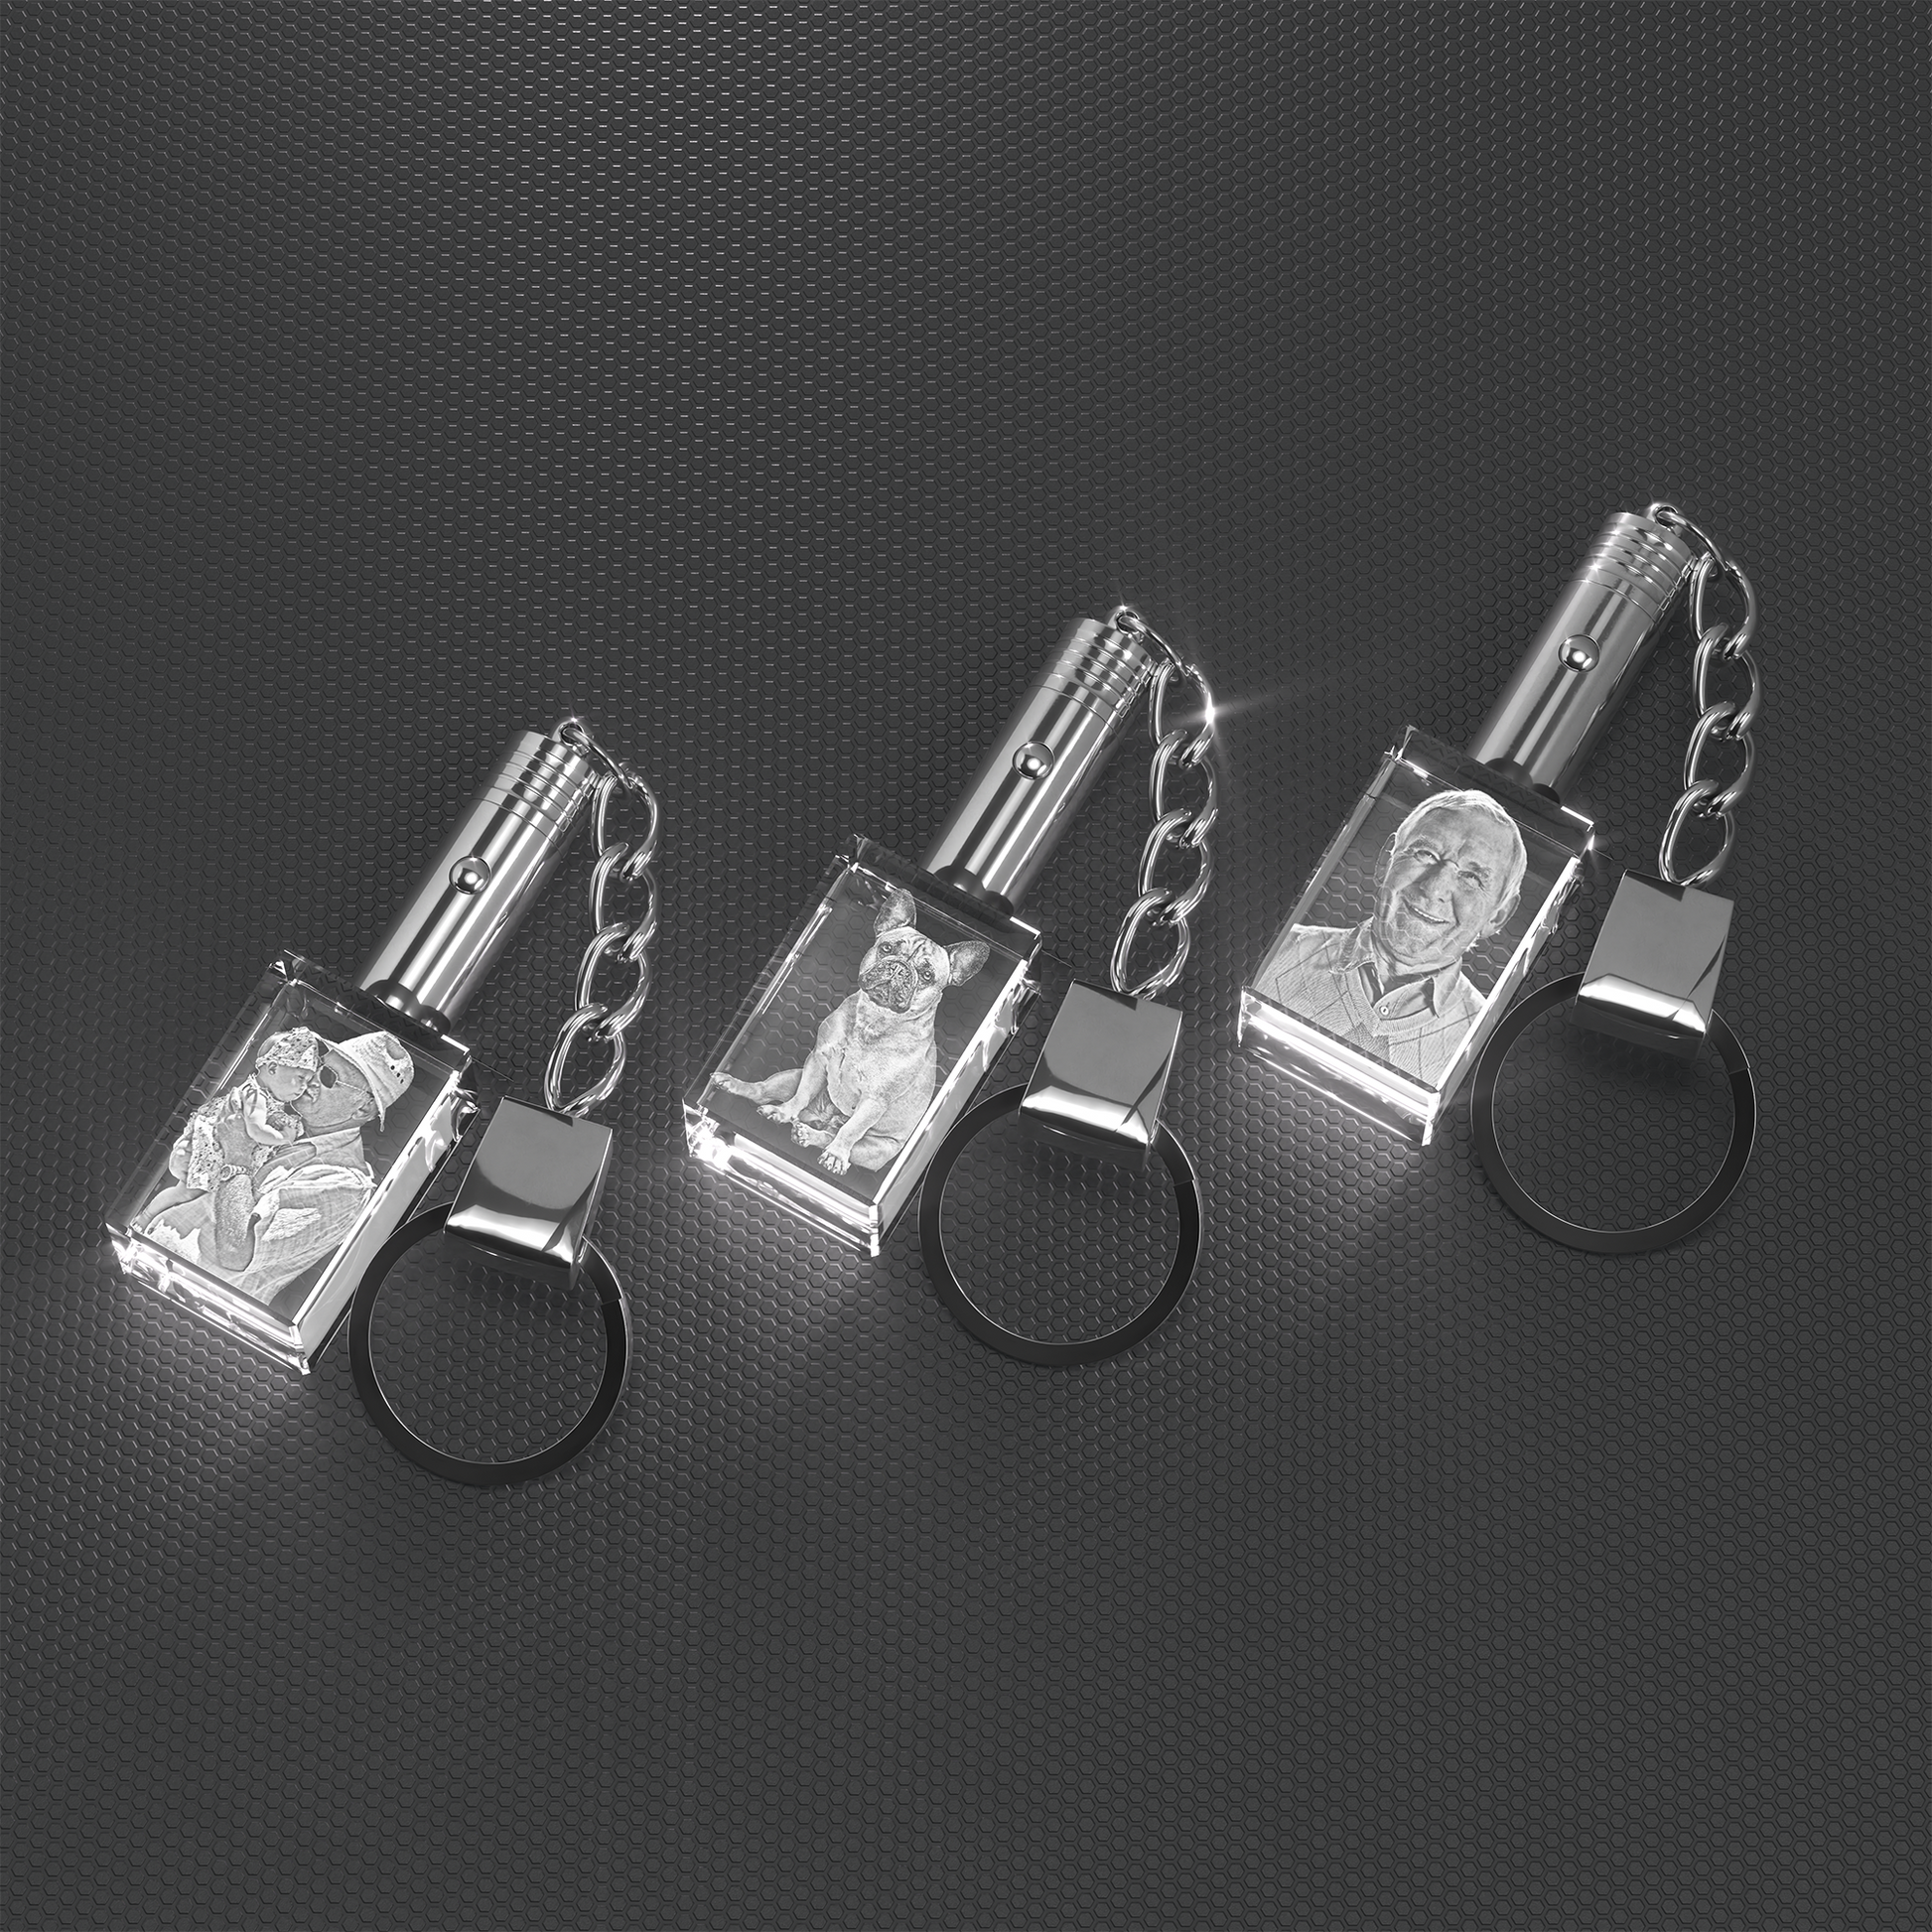 3D innovation Crystal Keychain Photo - Lighted Custom Crystal